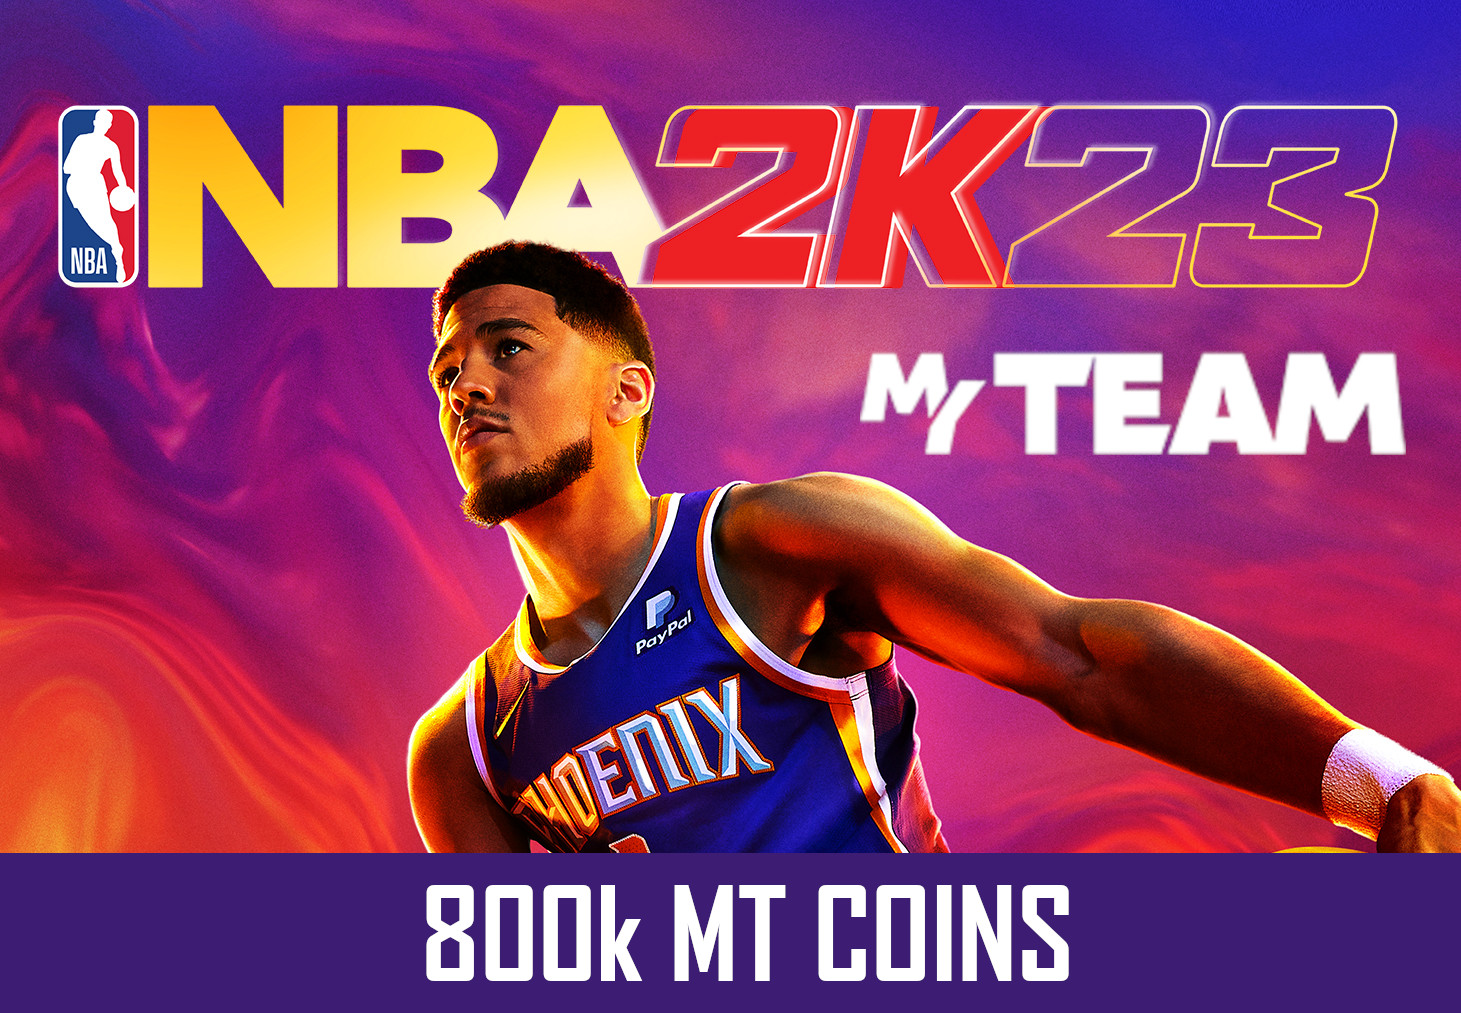 NBA 2K23 - 800k MT Coins - GLOBAL XBOX One/Series X|S